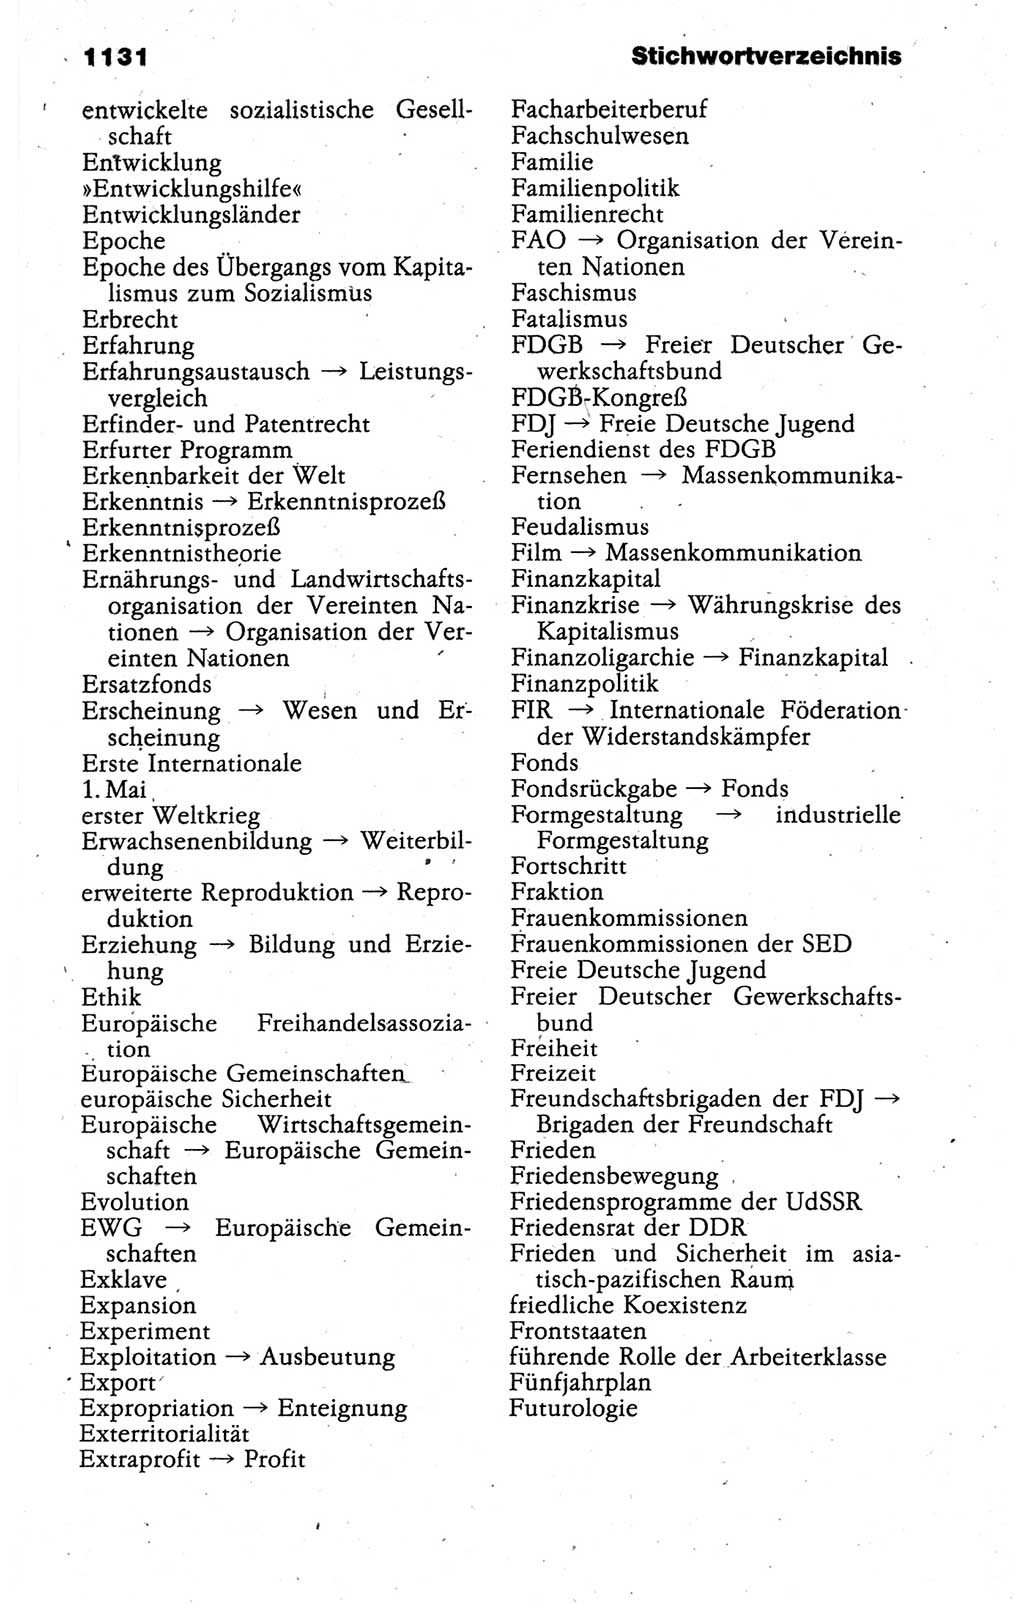 Kleines politisches Wörterbuch [Deutsche Demokratische Republik (DDR)] 1988, Seite 1131 (Kl. pol. Wb. DDR 1988, S. 1131)